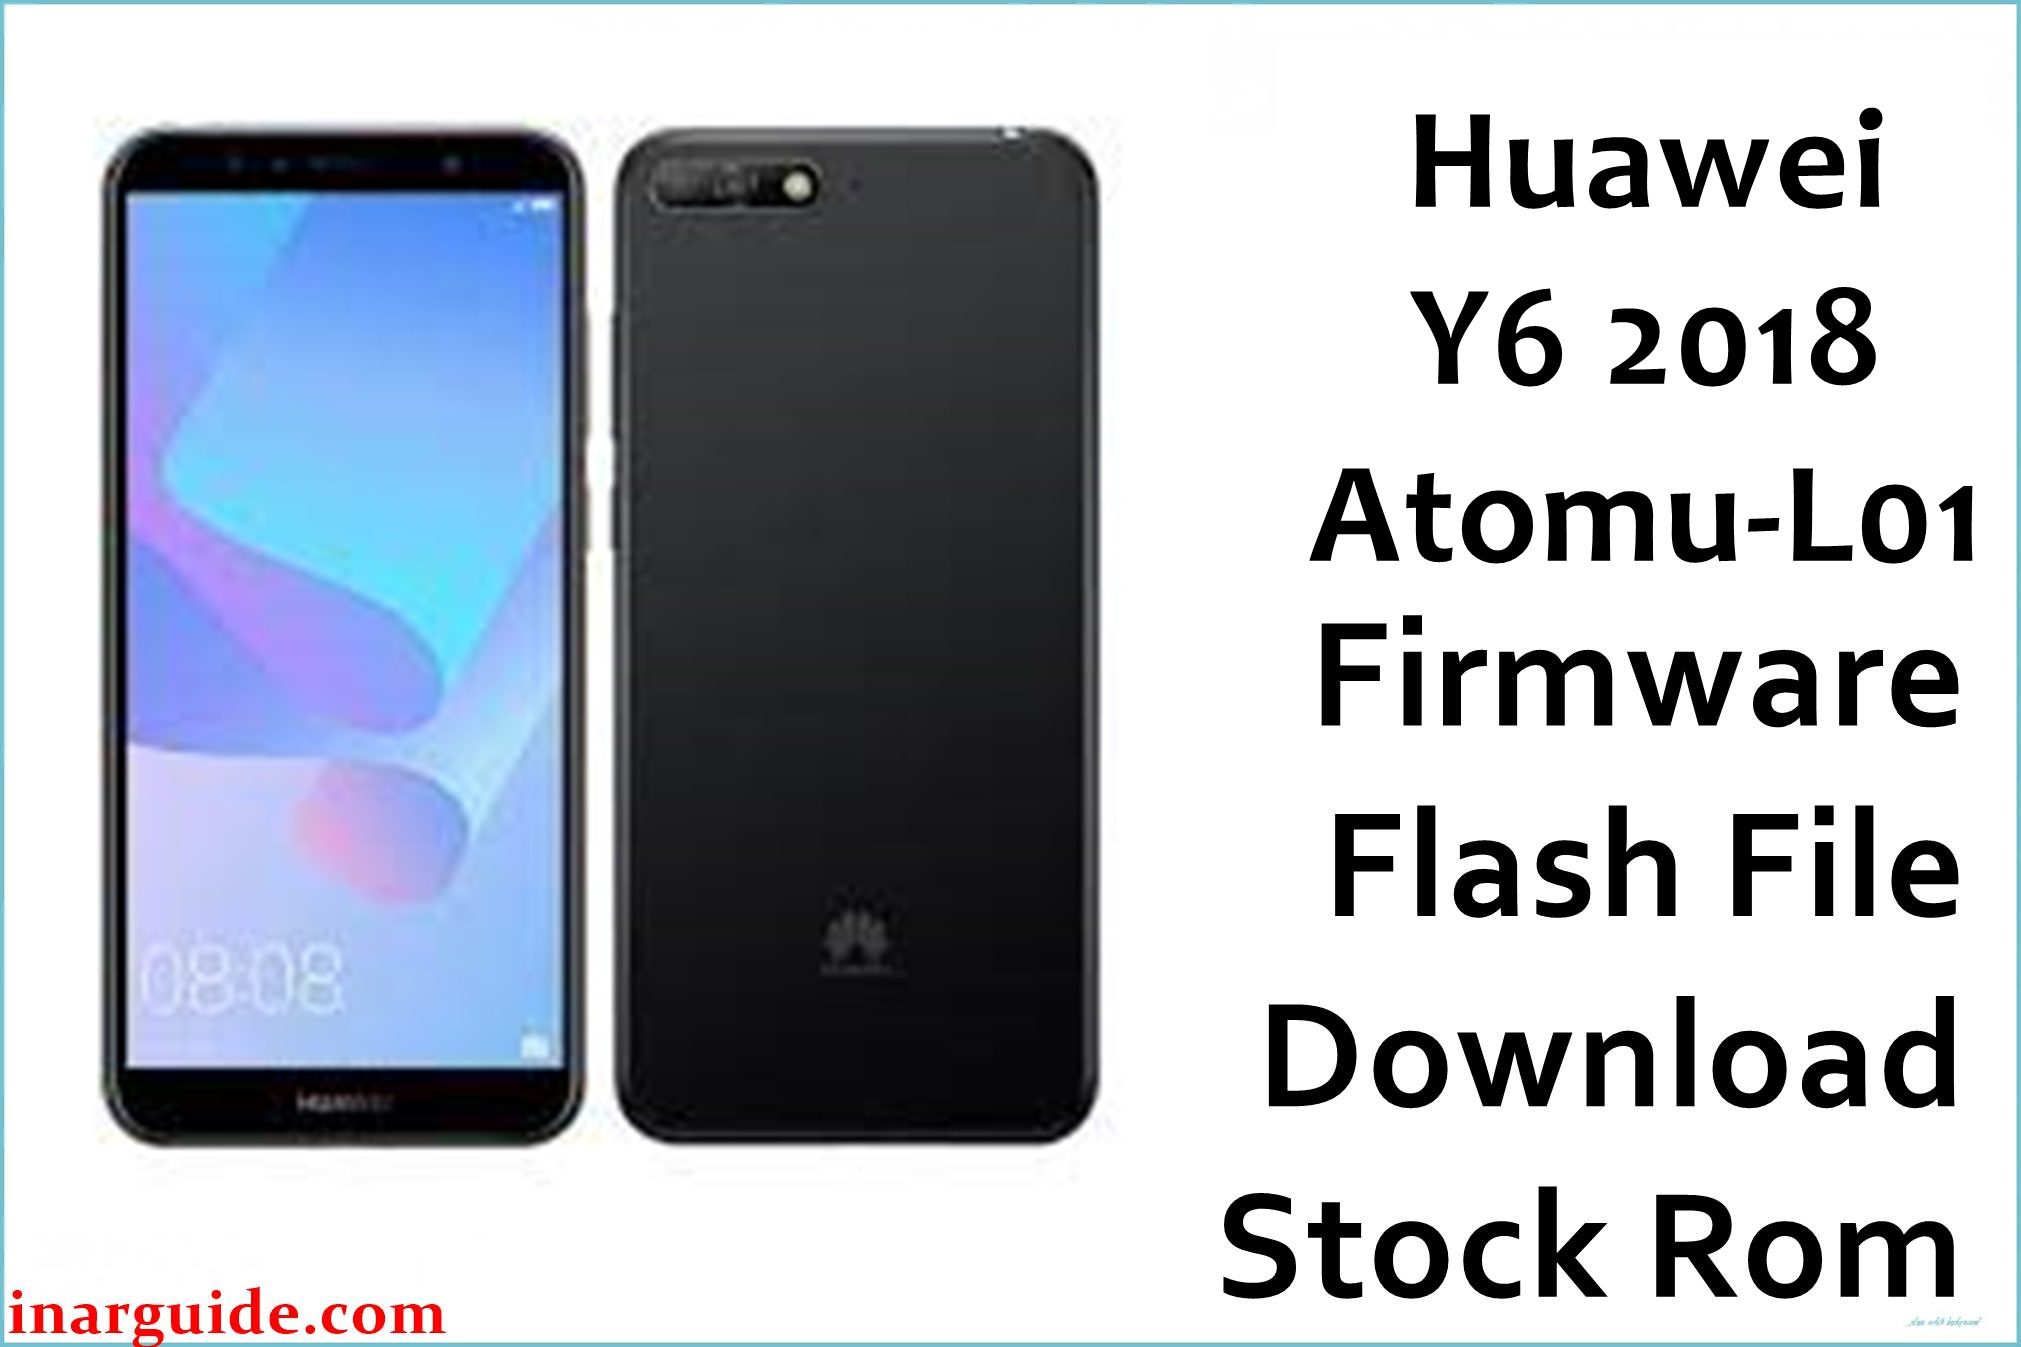 Huawei Y6 2018 Atomu L01